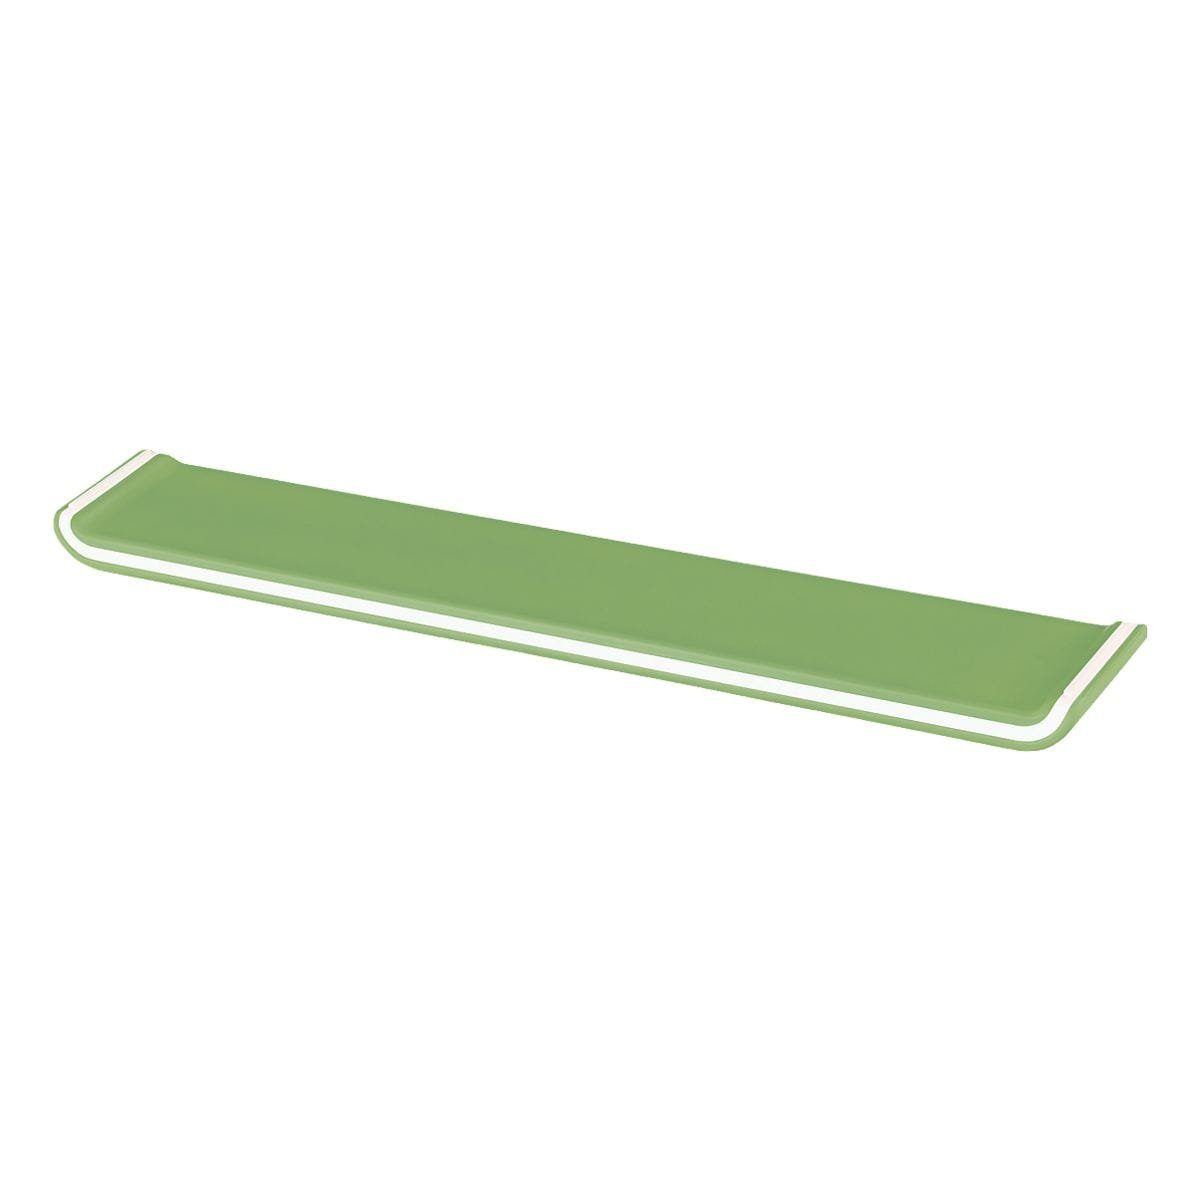 LEITZ Tastatur-Handballenauflage Ergo WOW, mit Schaumstofffüllung grün